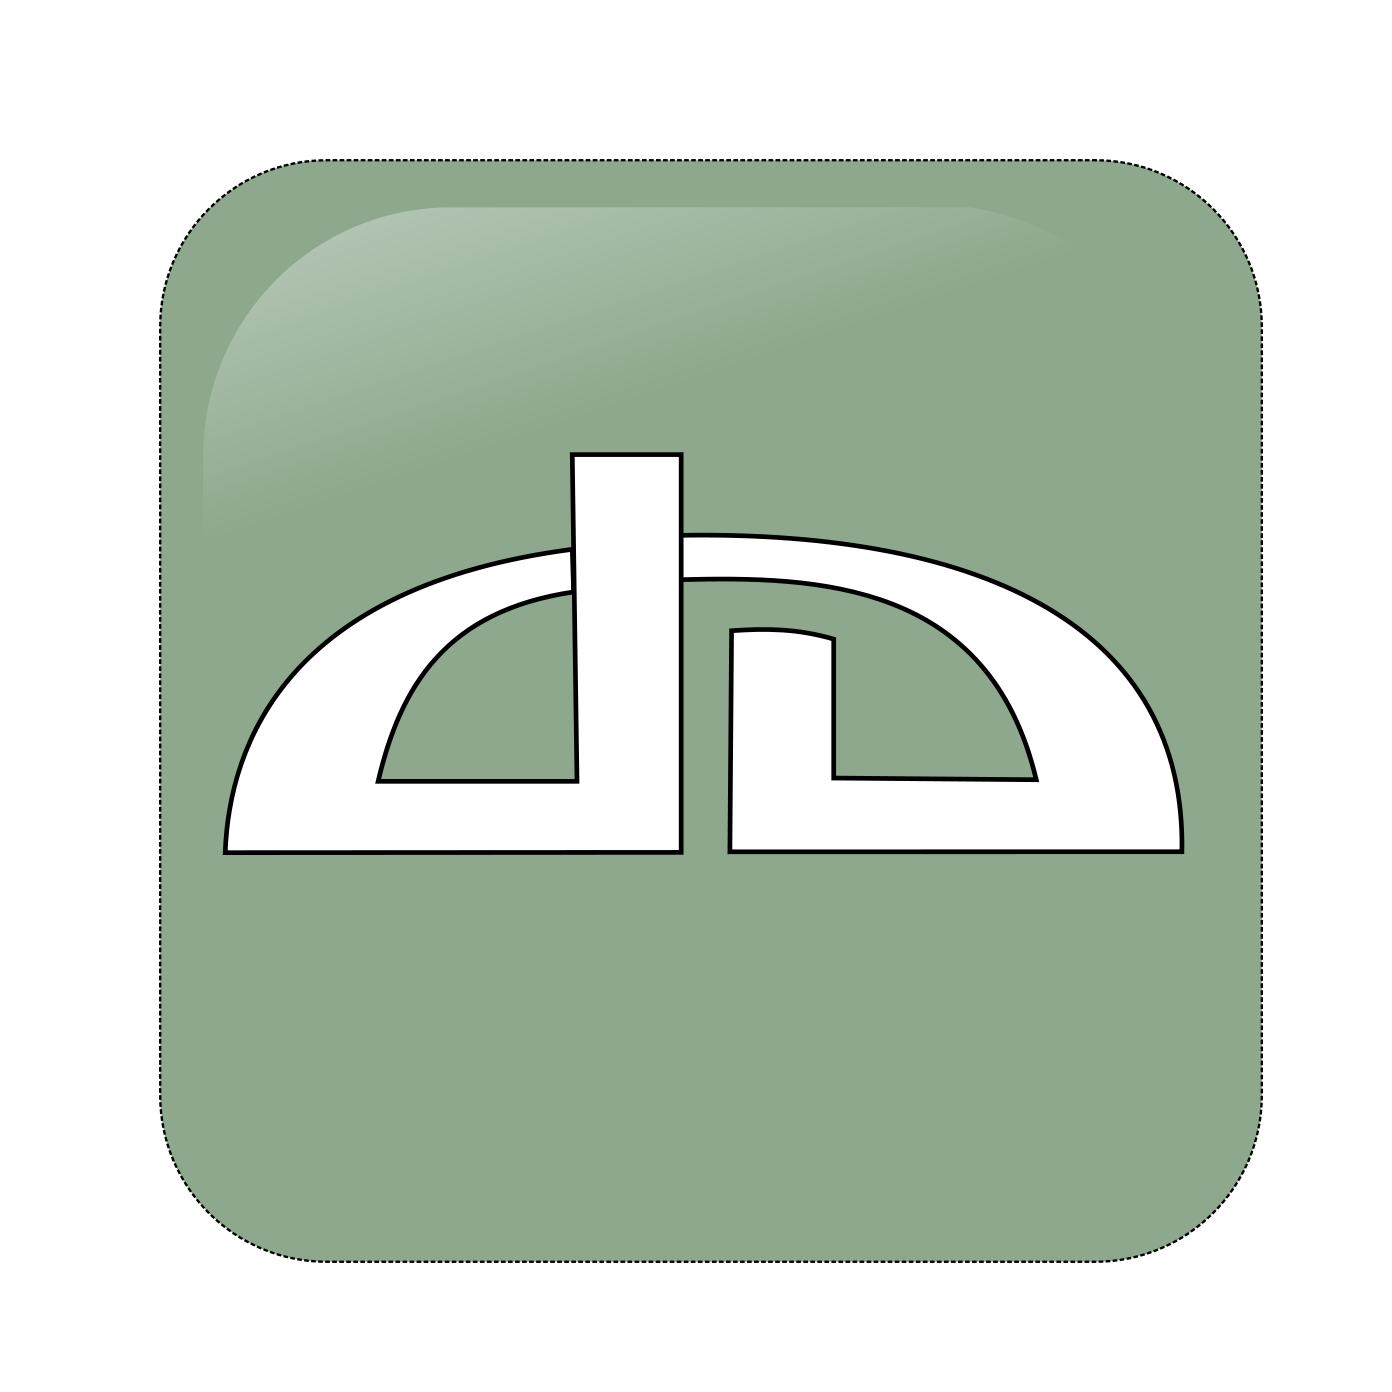 Deviantart Logo PNG Image in High Definition pngteam.com